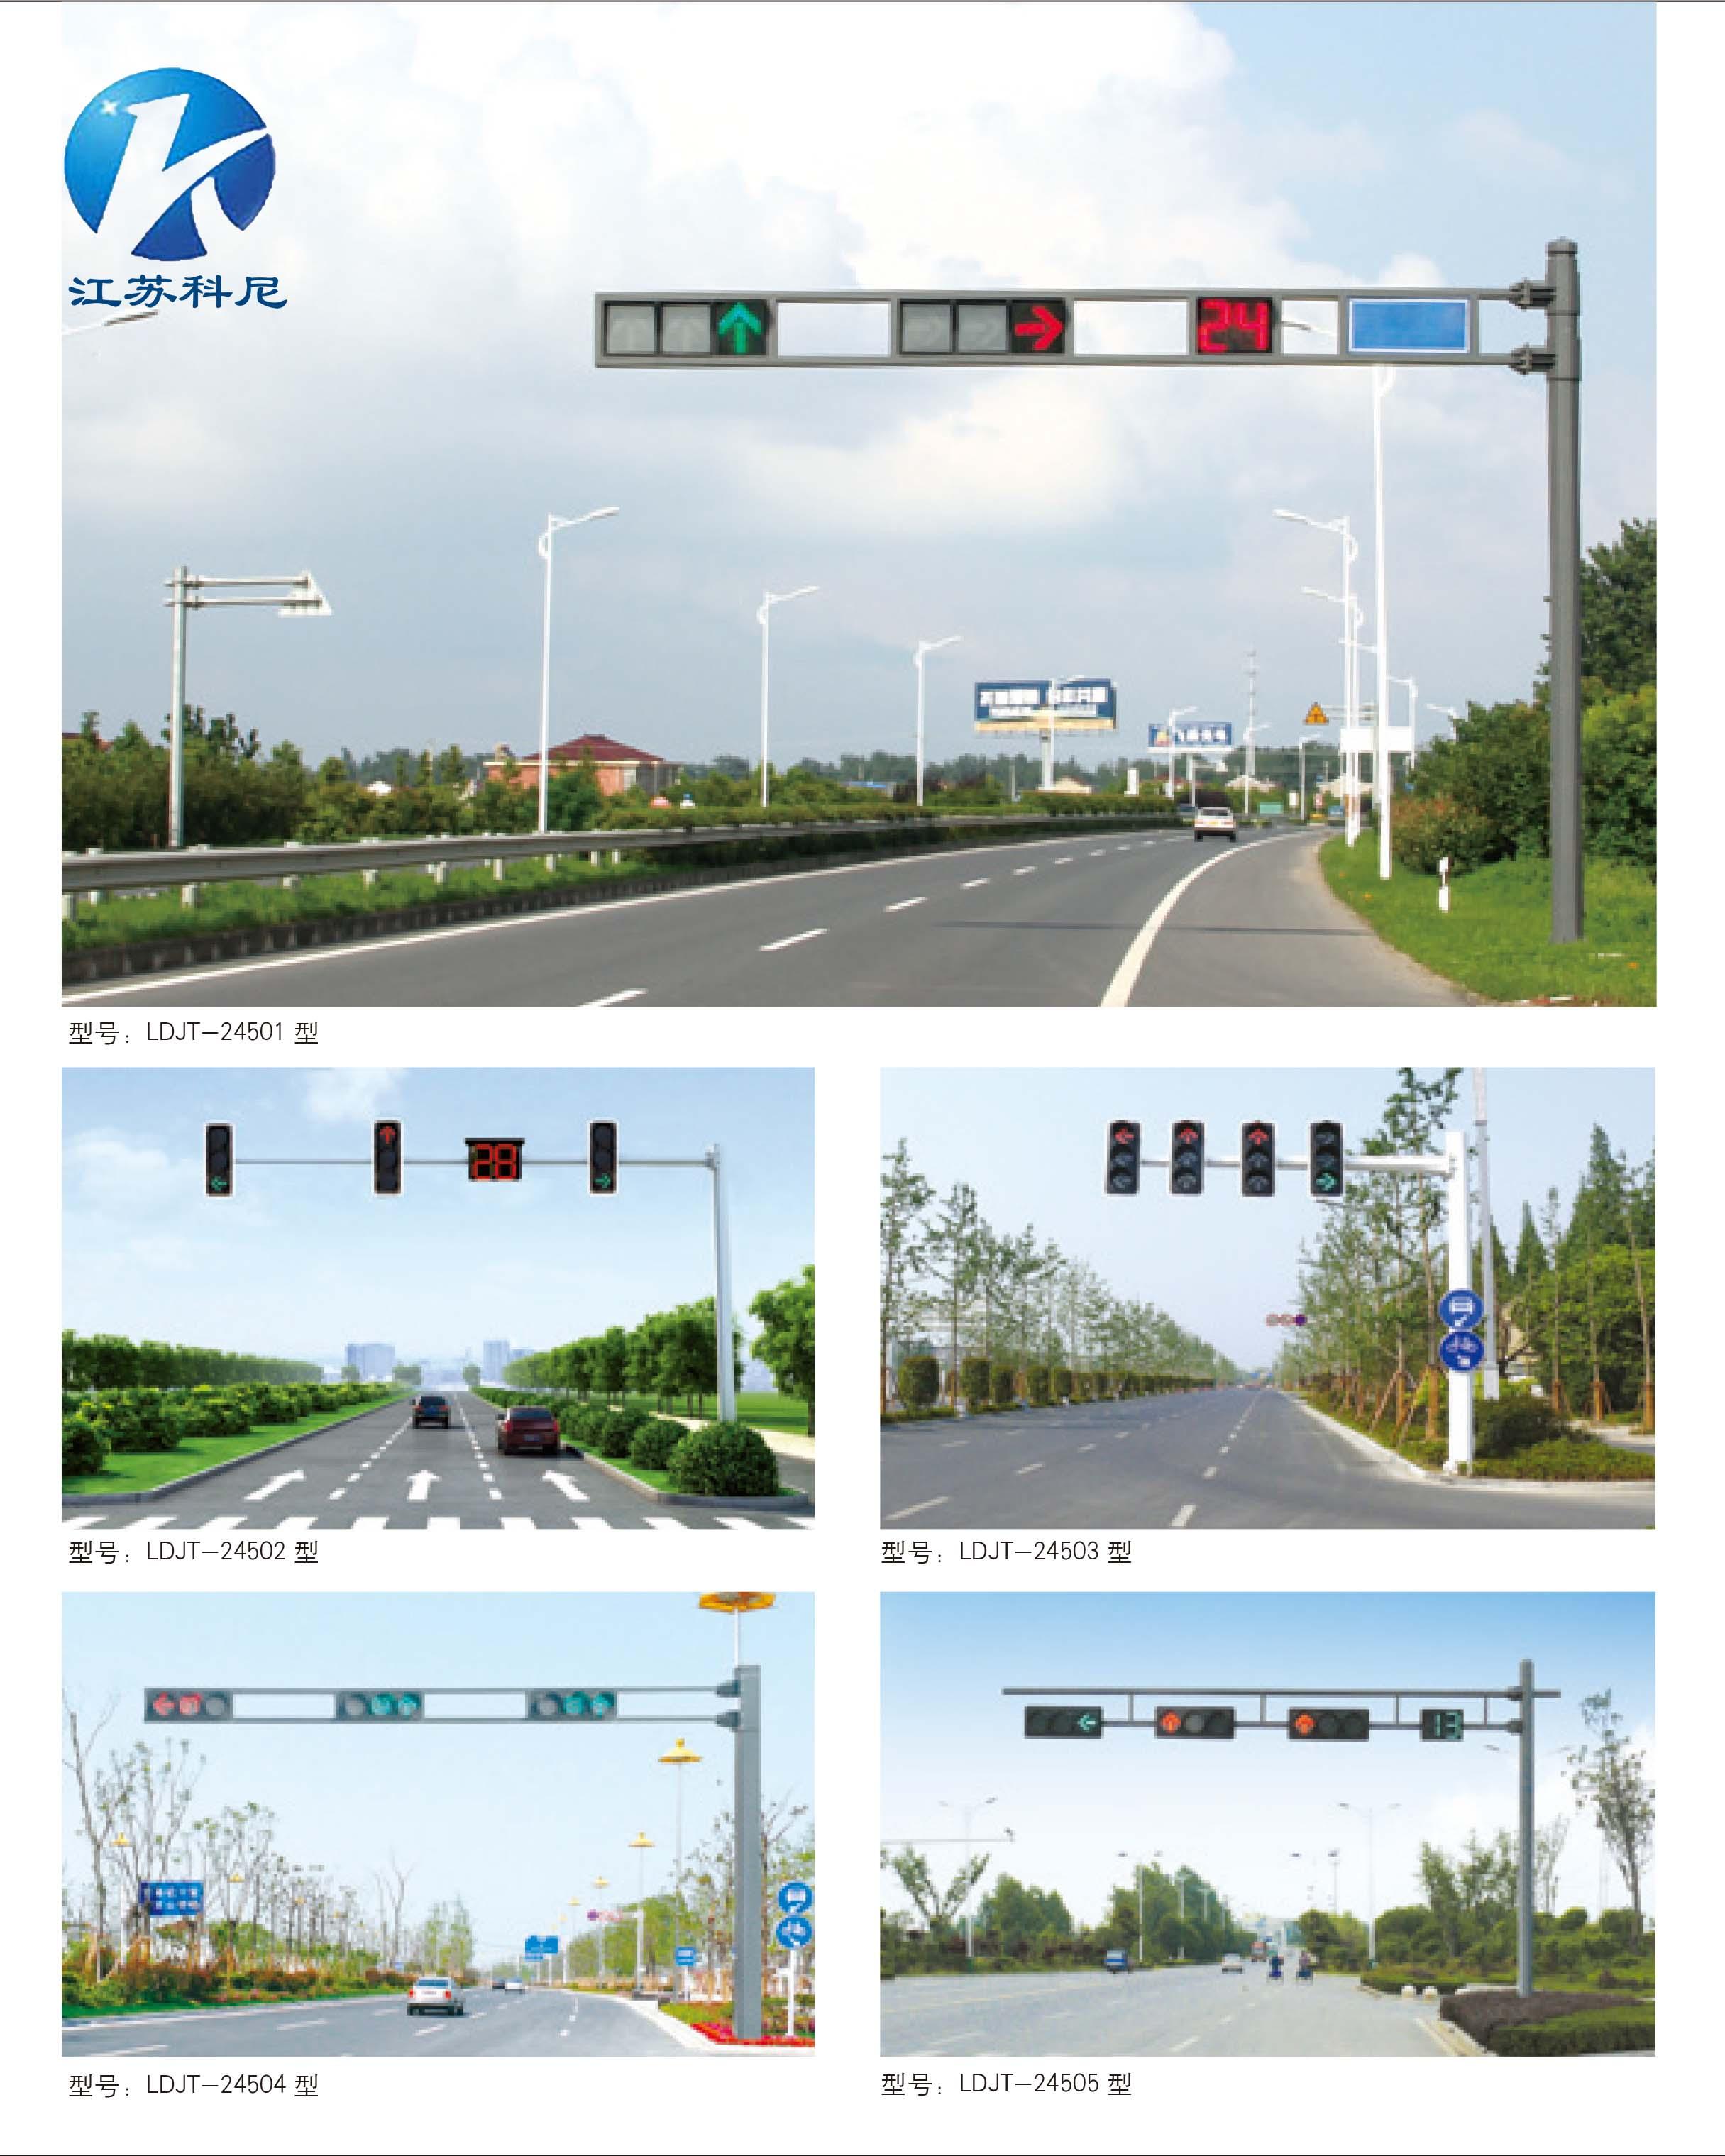 遵义道路交通指示信号灯安全警示灯